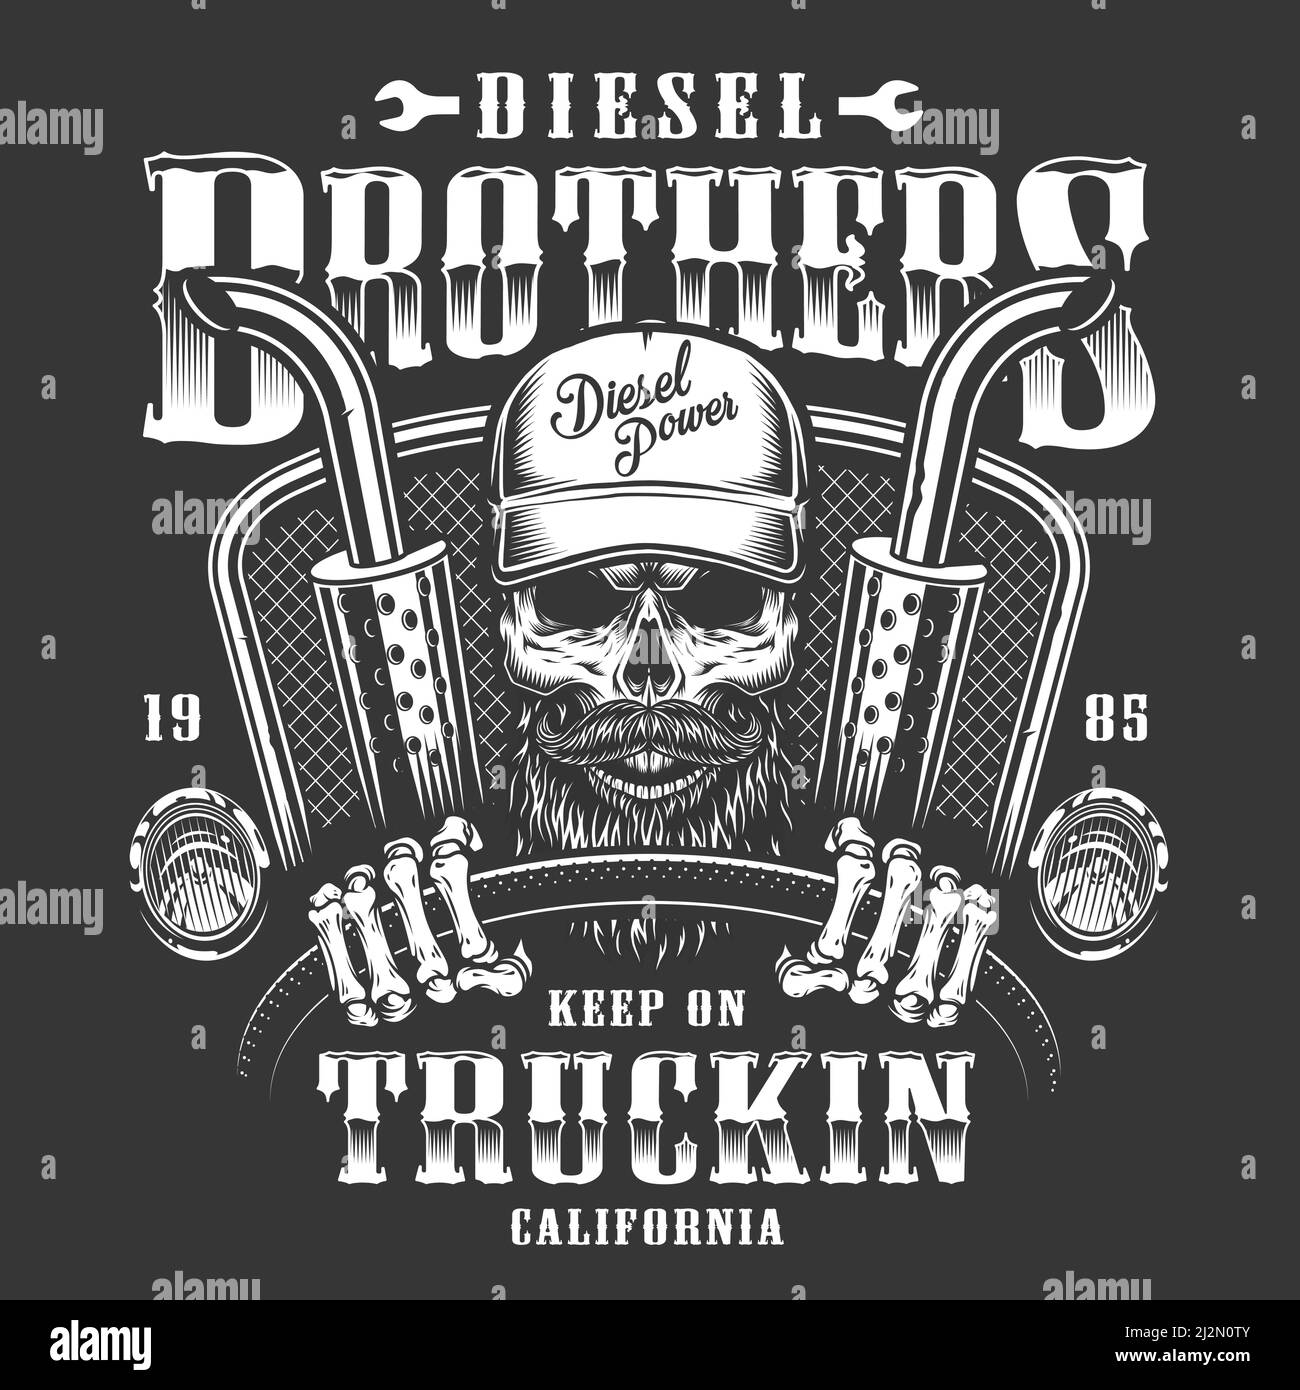 Skull trucker print on t-shirt. Vector illustration Stock Vector